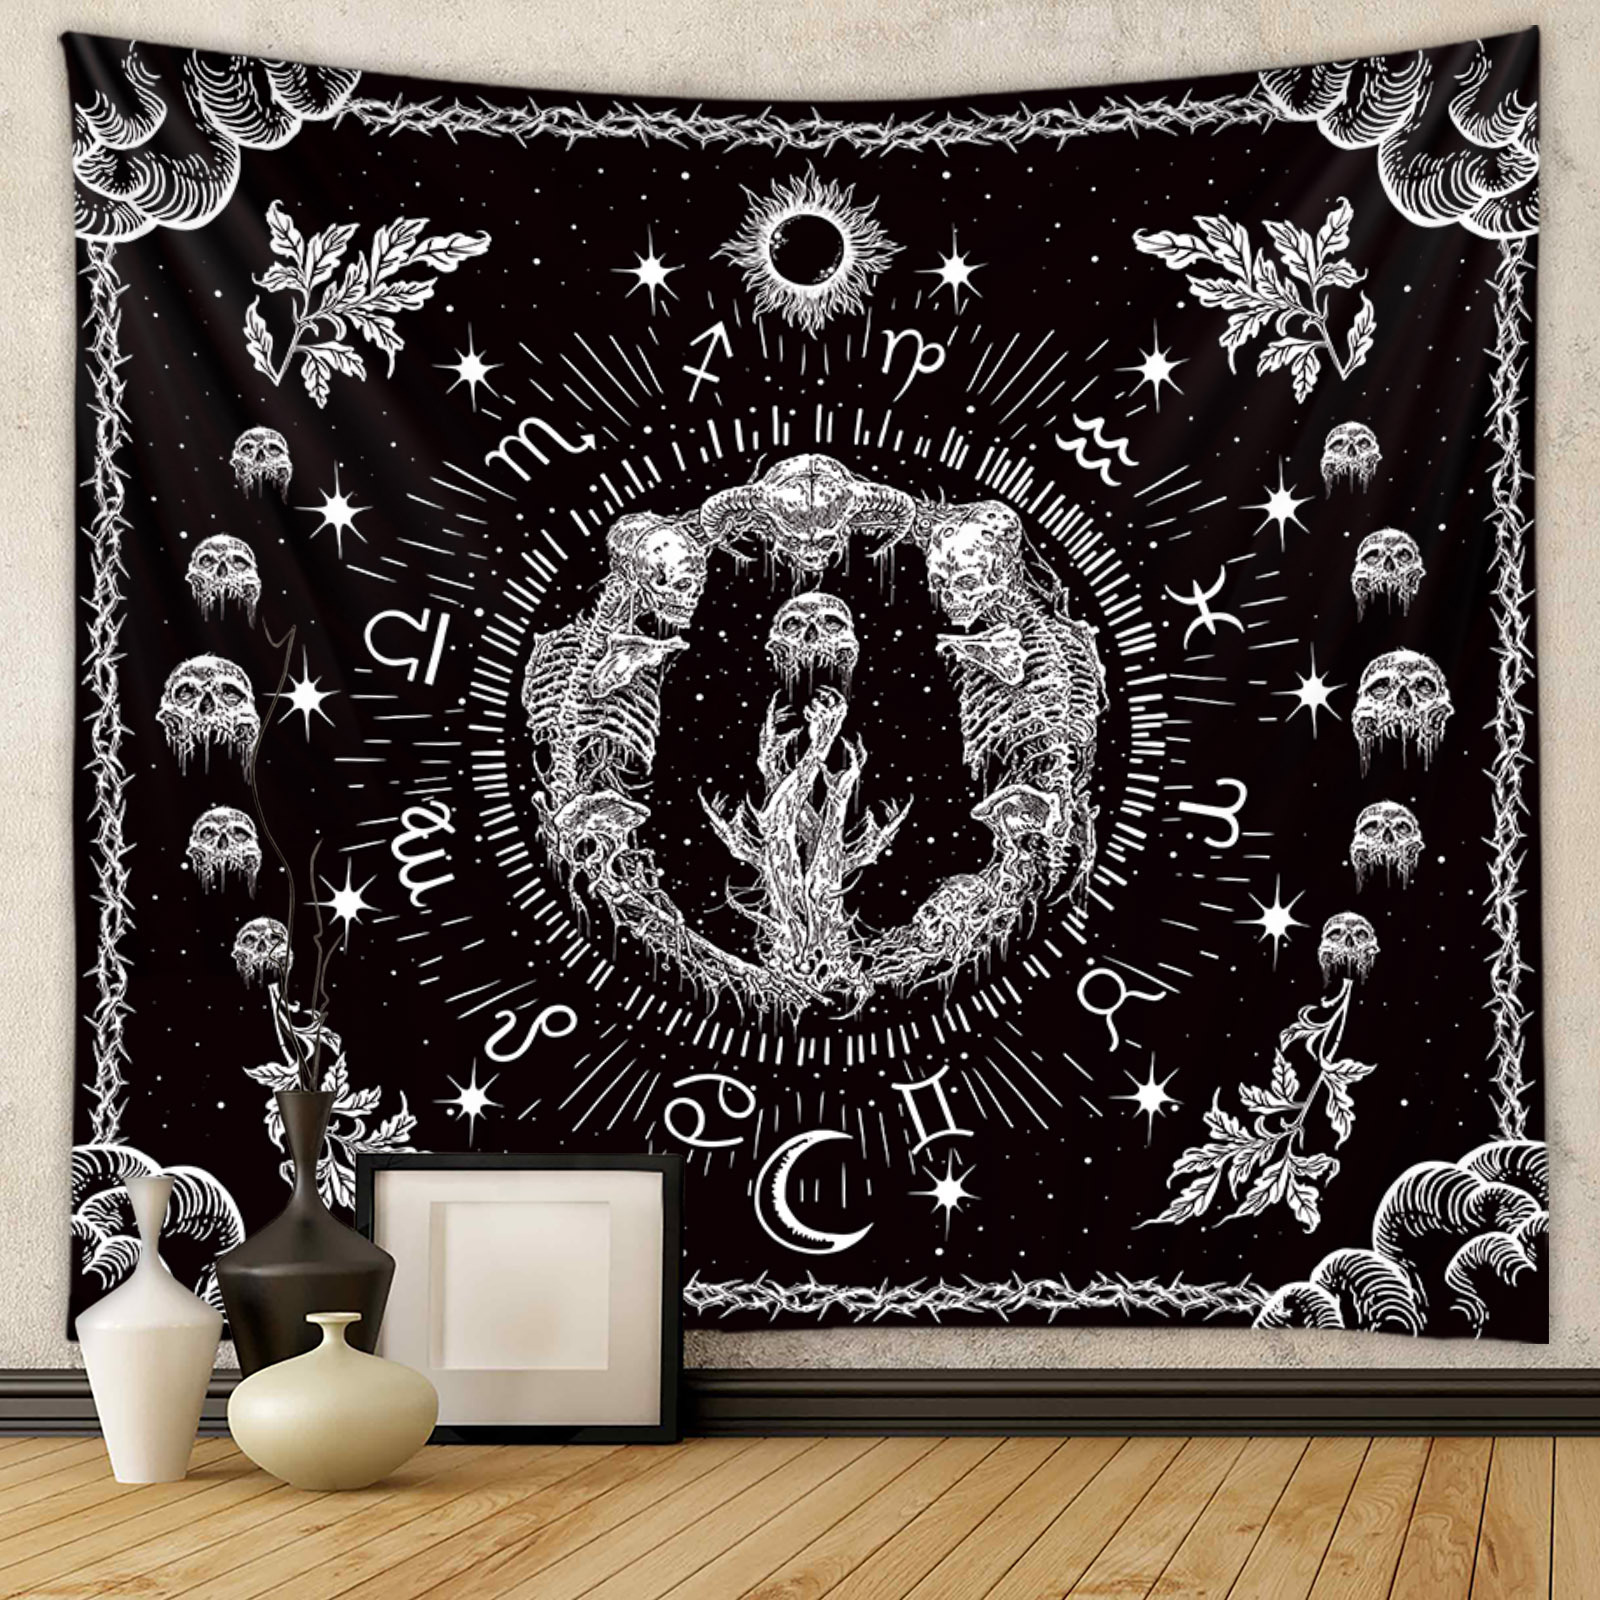 Le démon de l'enfer tapisserie en tissu suspendu tapestries fond tissus inscriving tissu décoratif bœuf bohemian décoration intérieure